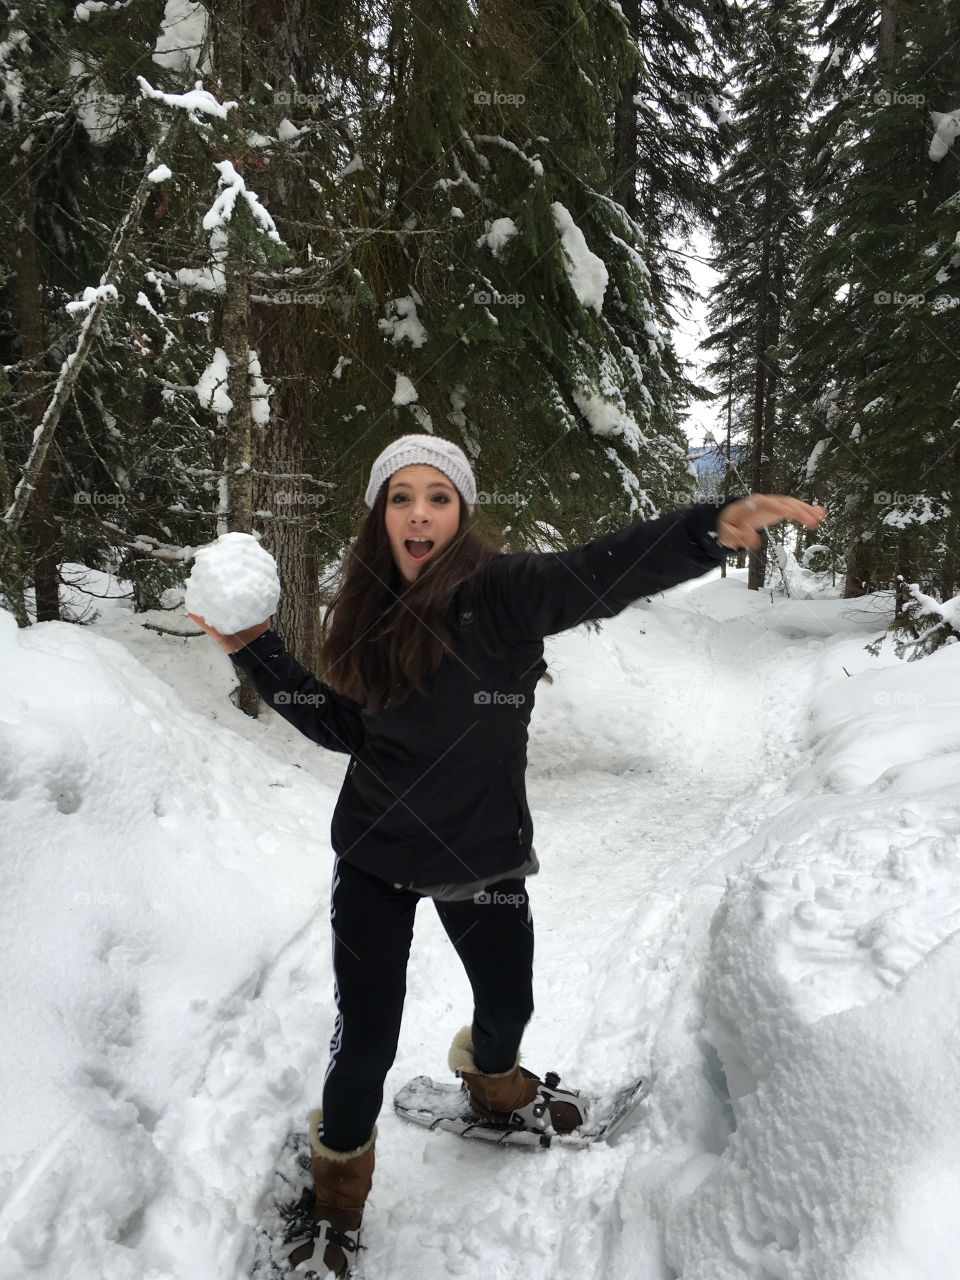 Snowball fun